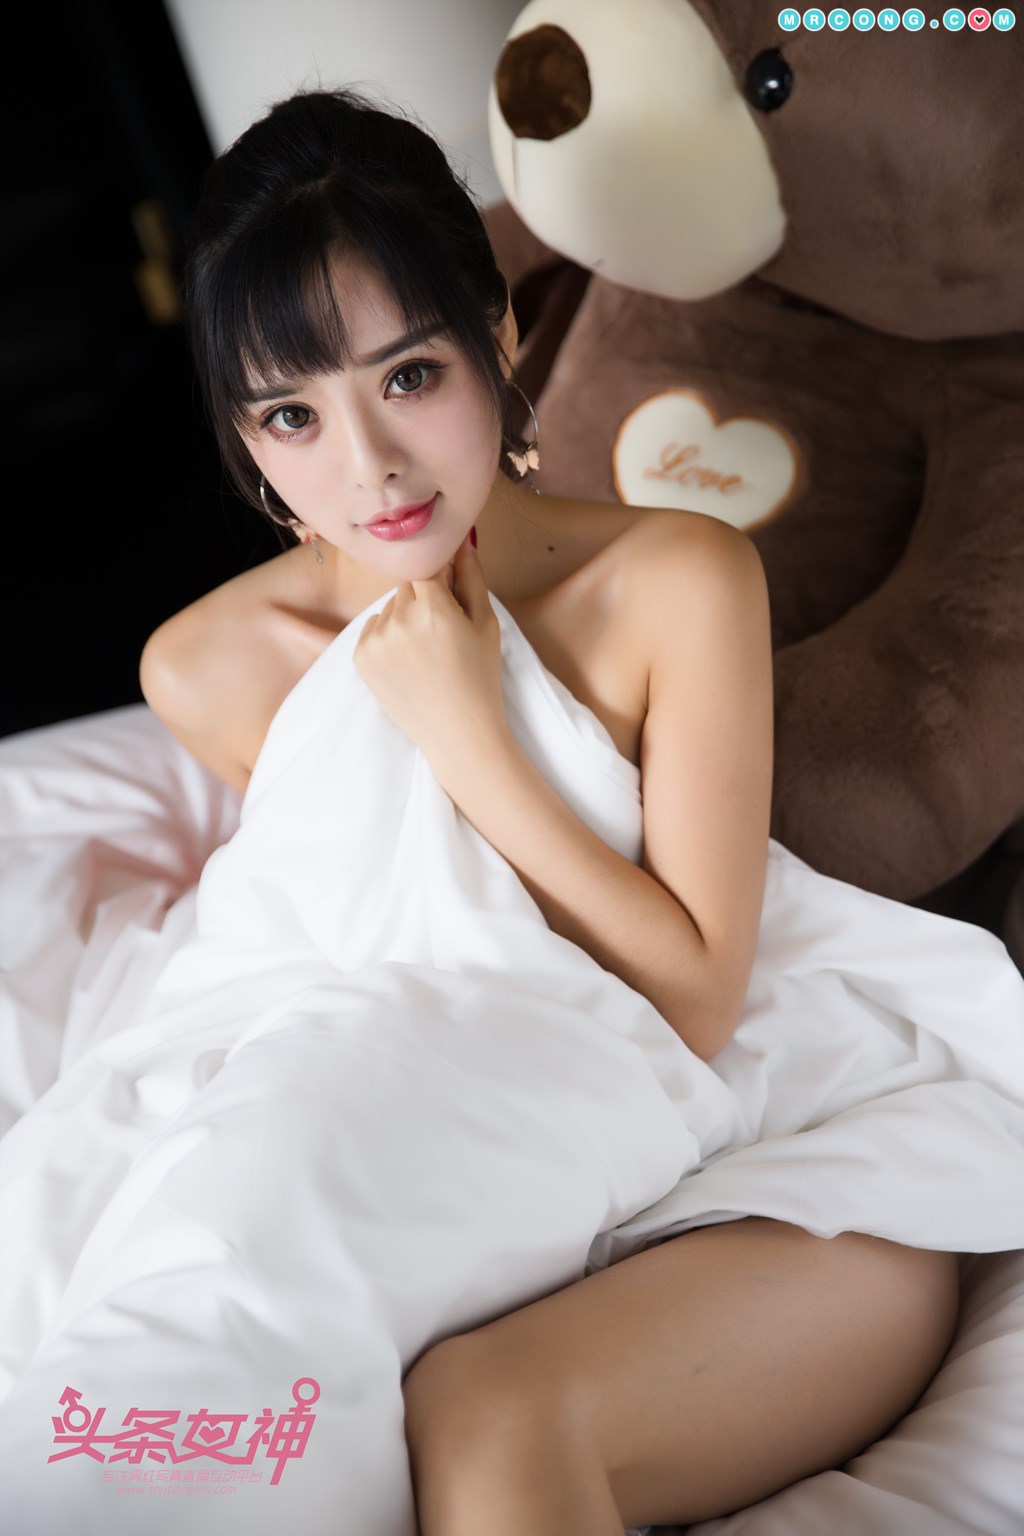 TouTiao 2017-11-04: Model Zhou Xi Yan (周 熙 妍) (11 photos) photo 1-9